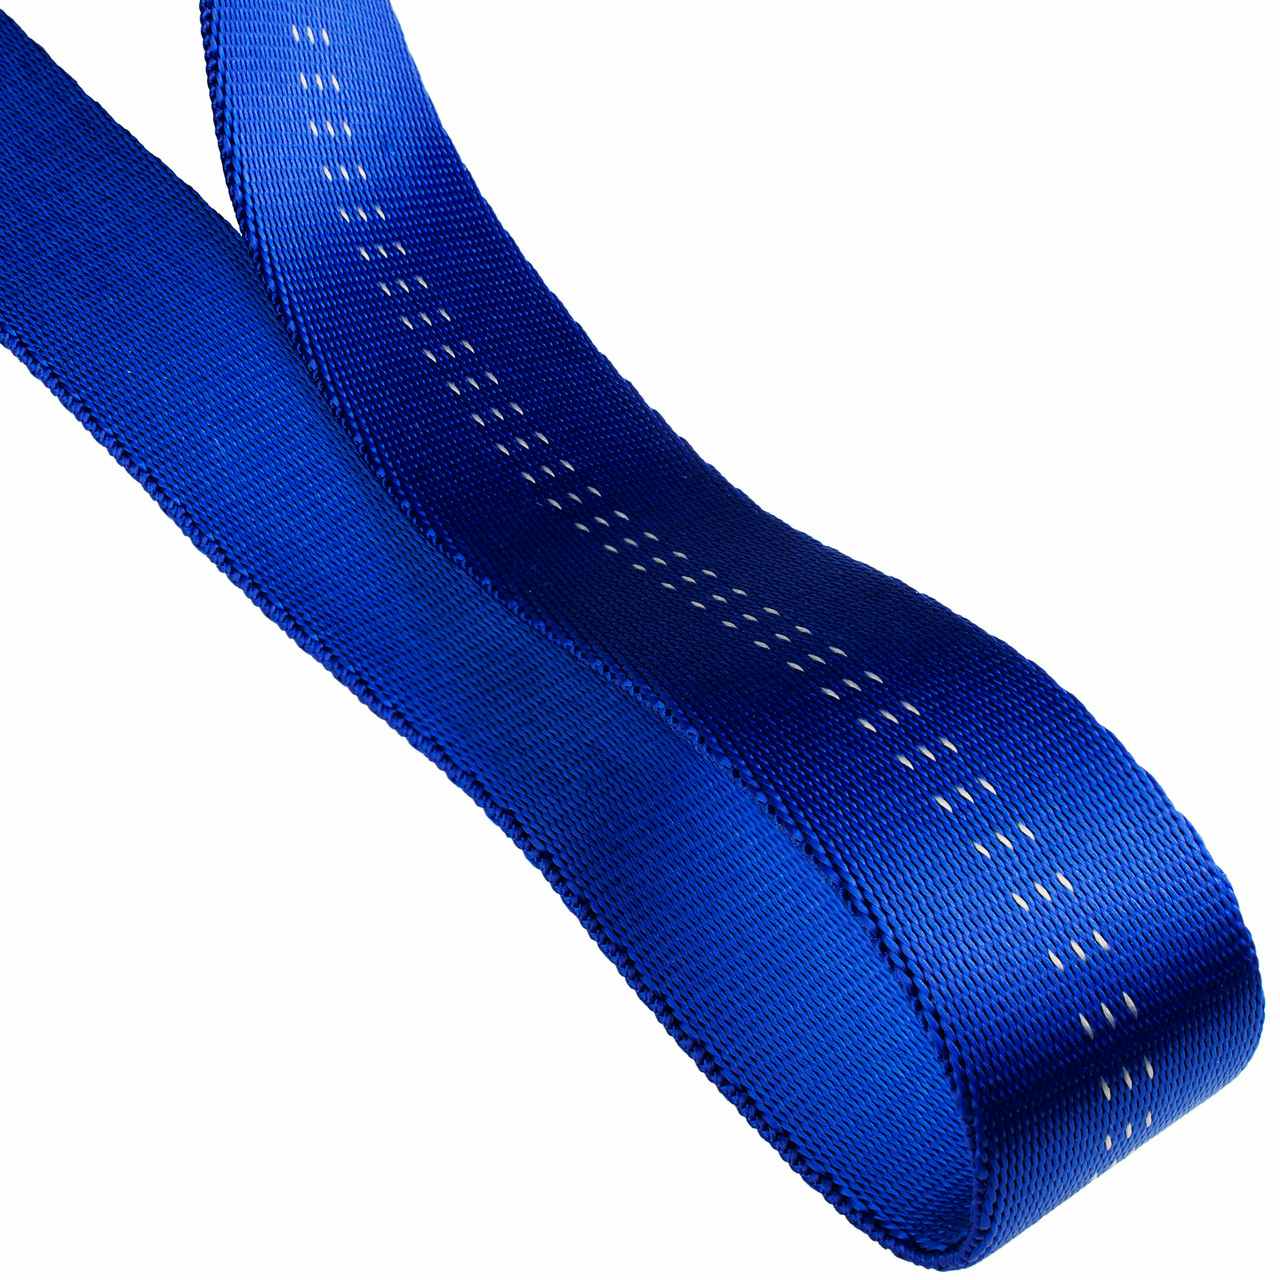 1"(25mm) Nylon Tubular Climbing Webbing Blue